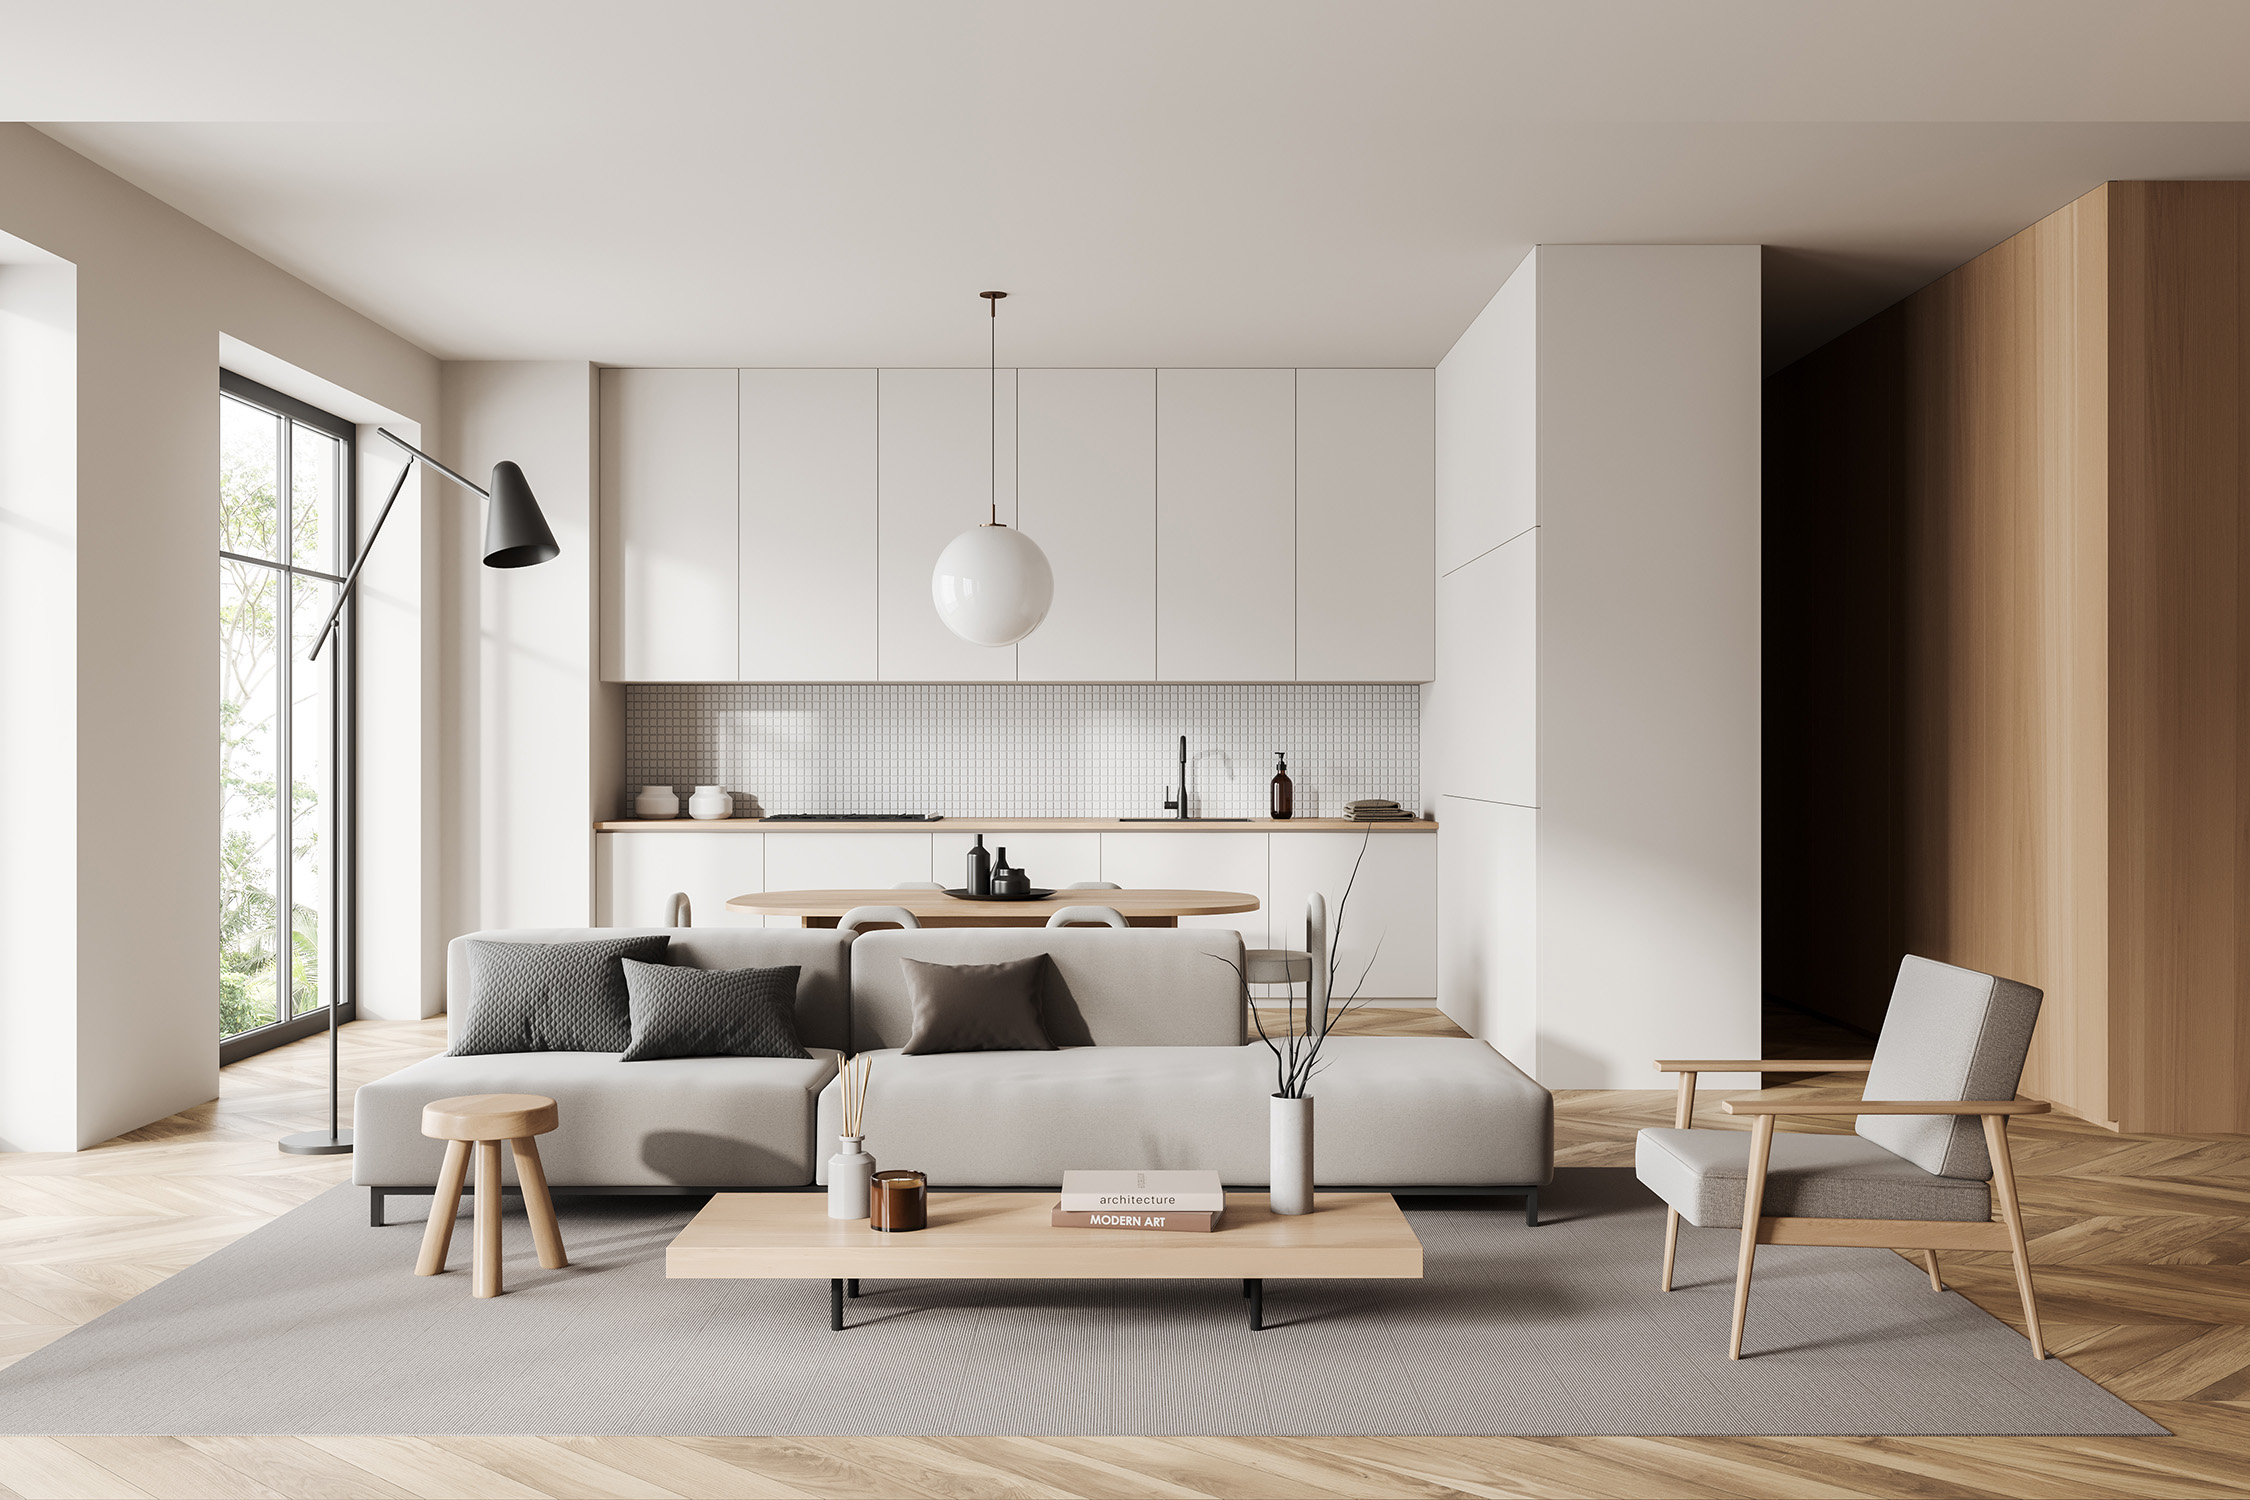 Schlicht-modernes Wohnzimmer mti viel Holz und skandinavischen Möbeln